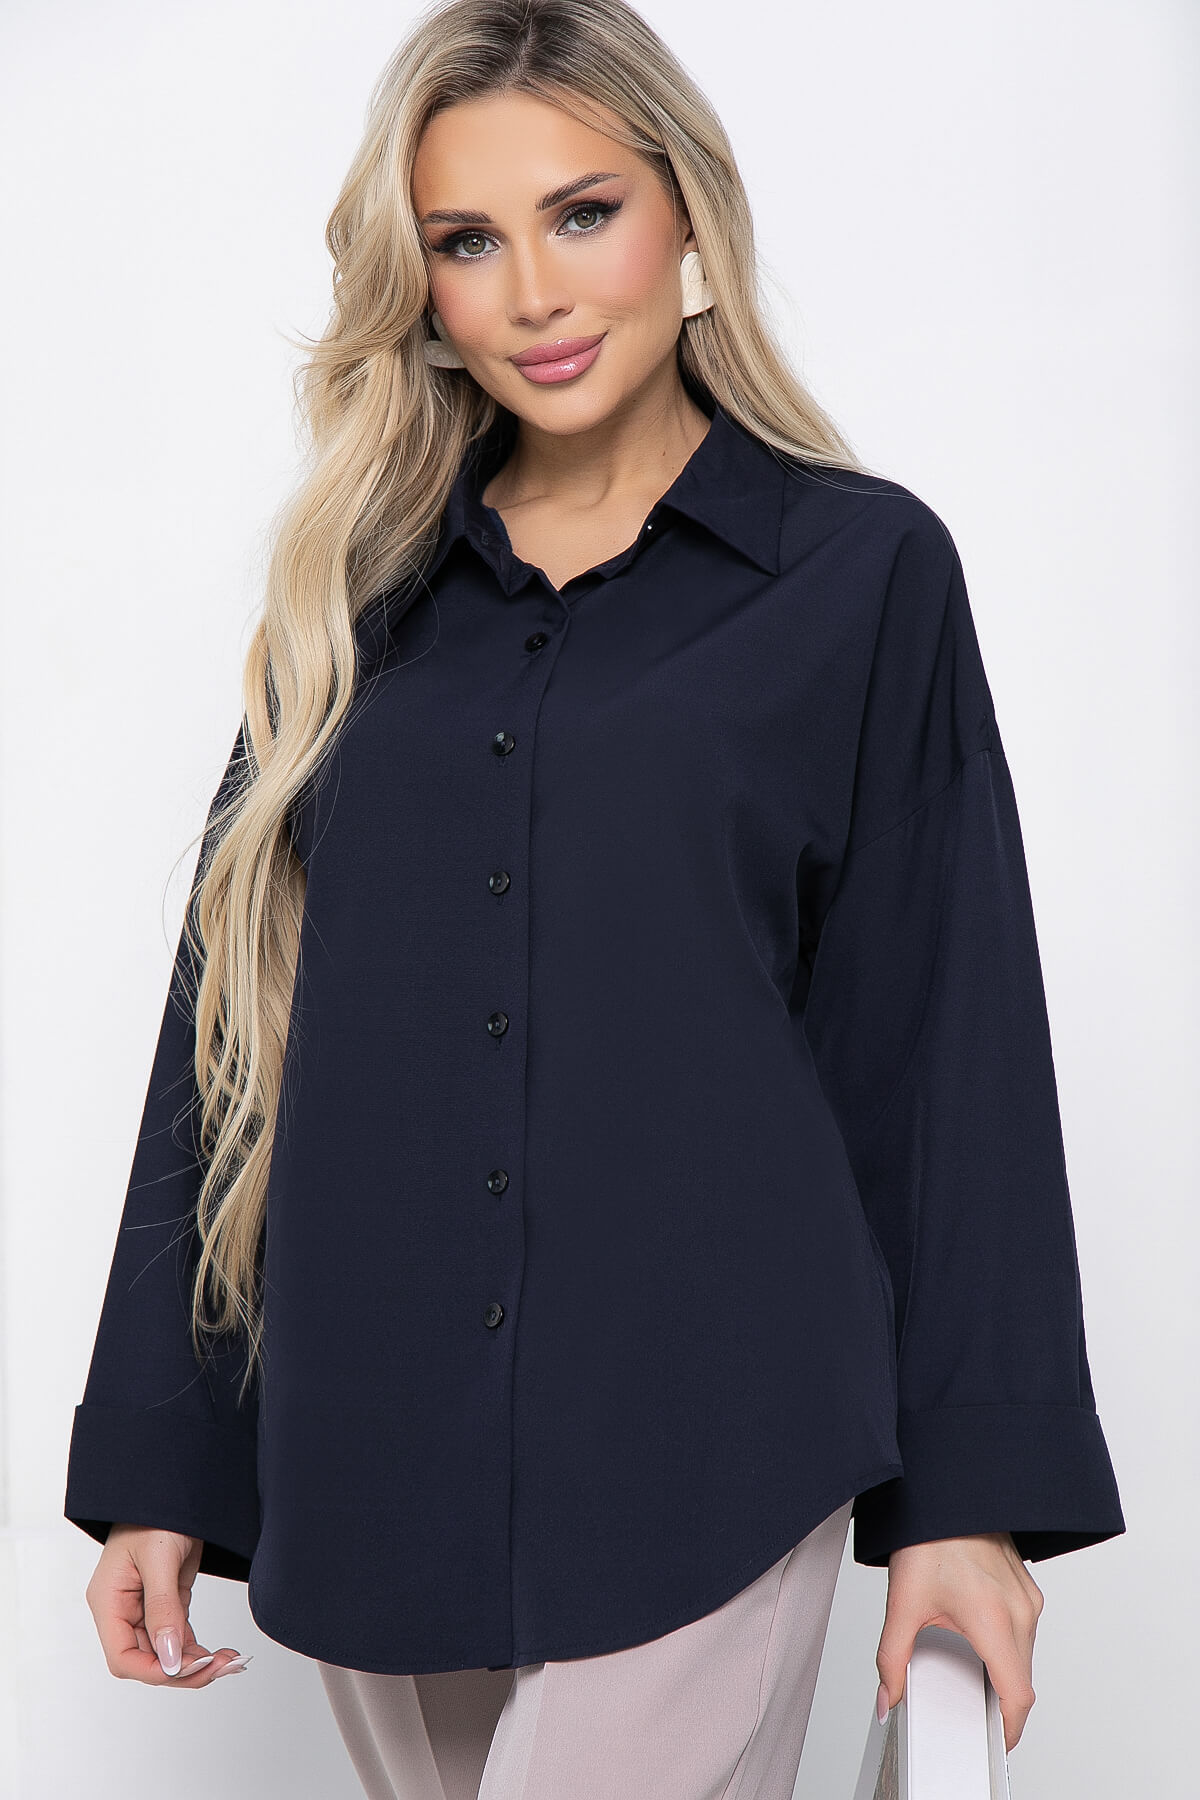 Рубашка женская LT Collection Каталина синяя 48 RU